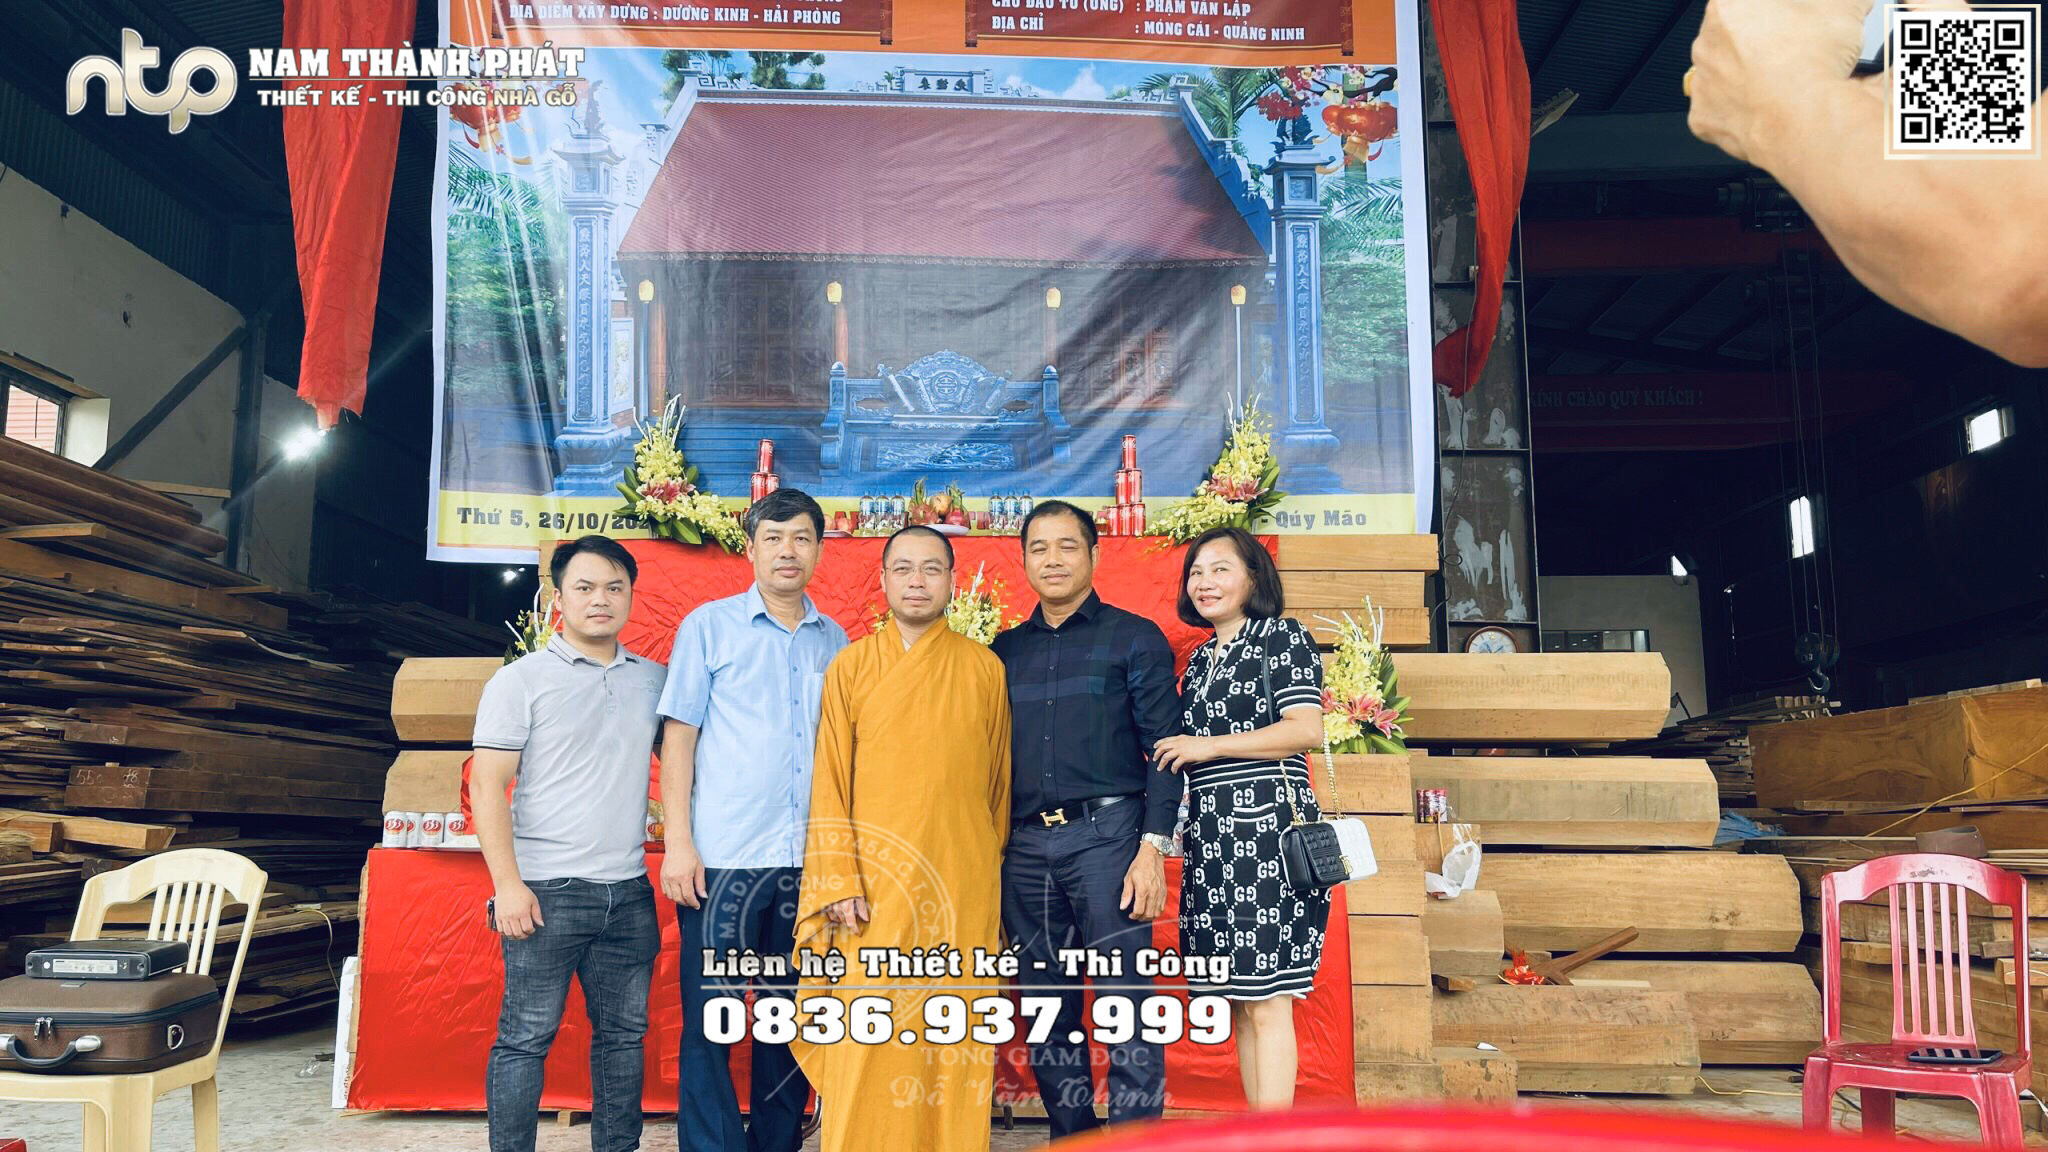 Lễ phạt mộc nhà gỗ Lim 3 gian tại Quảng Ninh - Nhà gỗ Nam Thành Phát